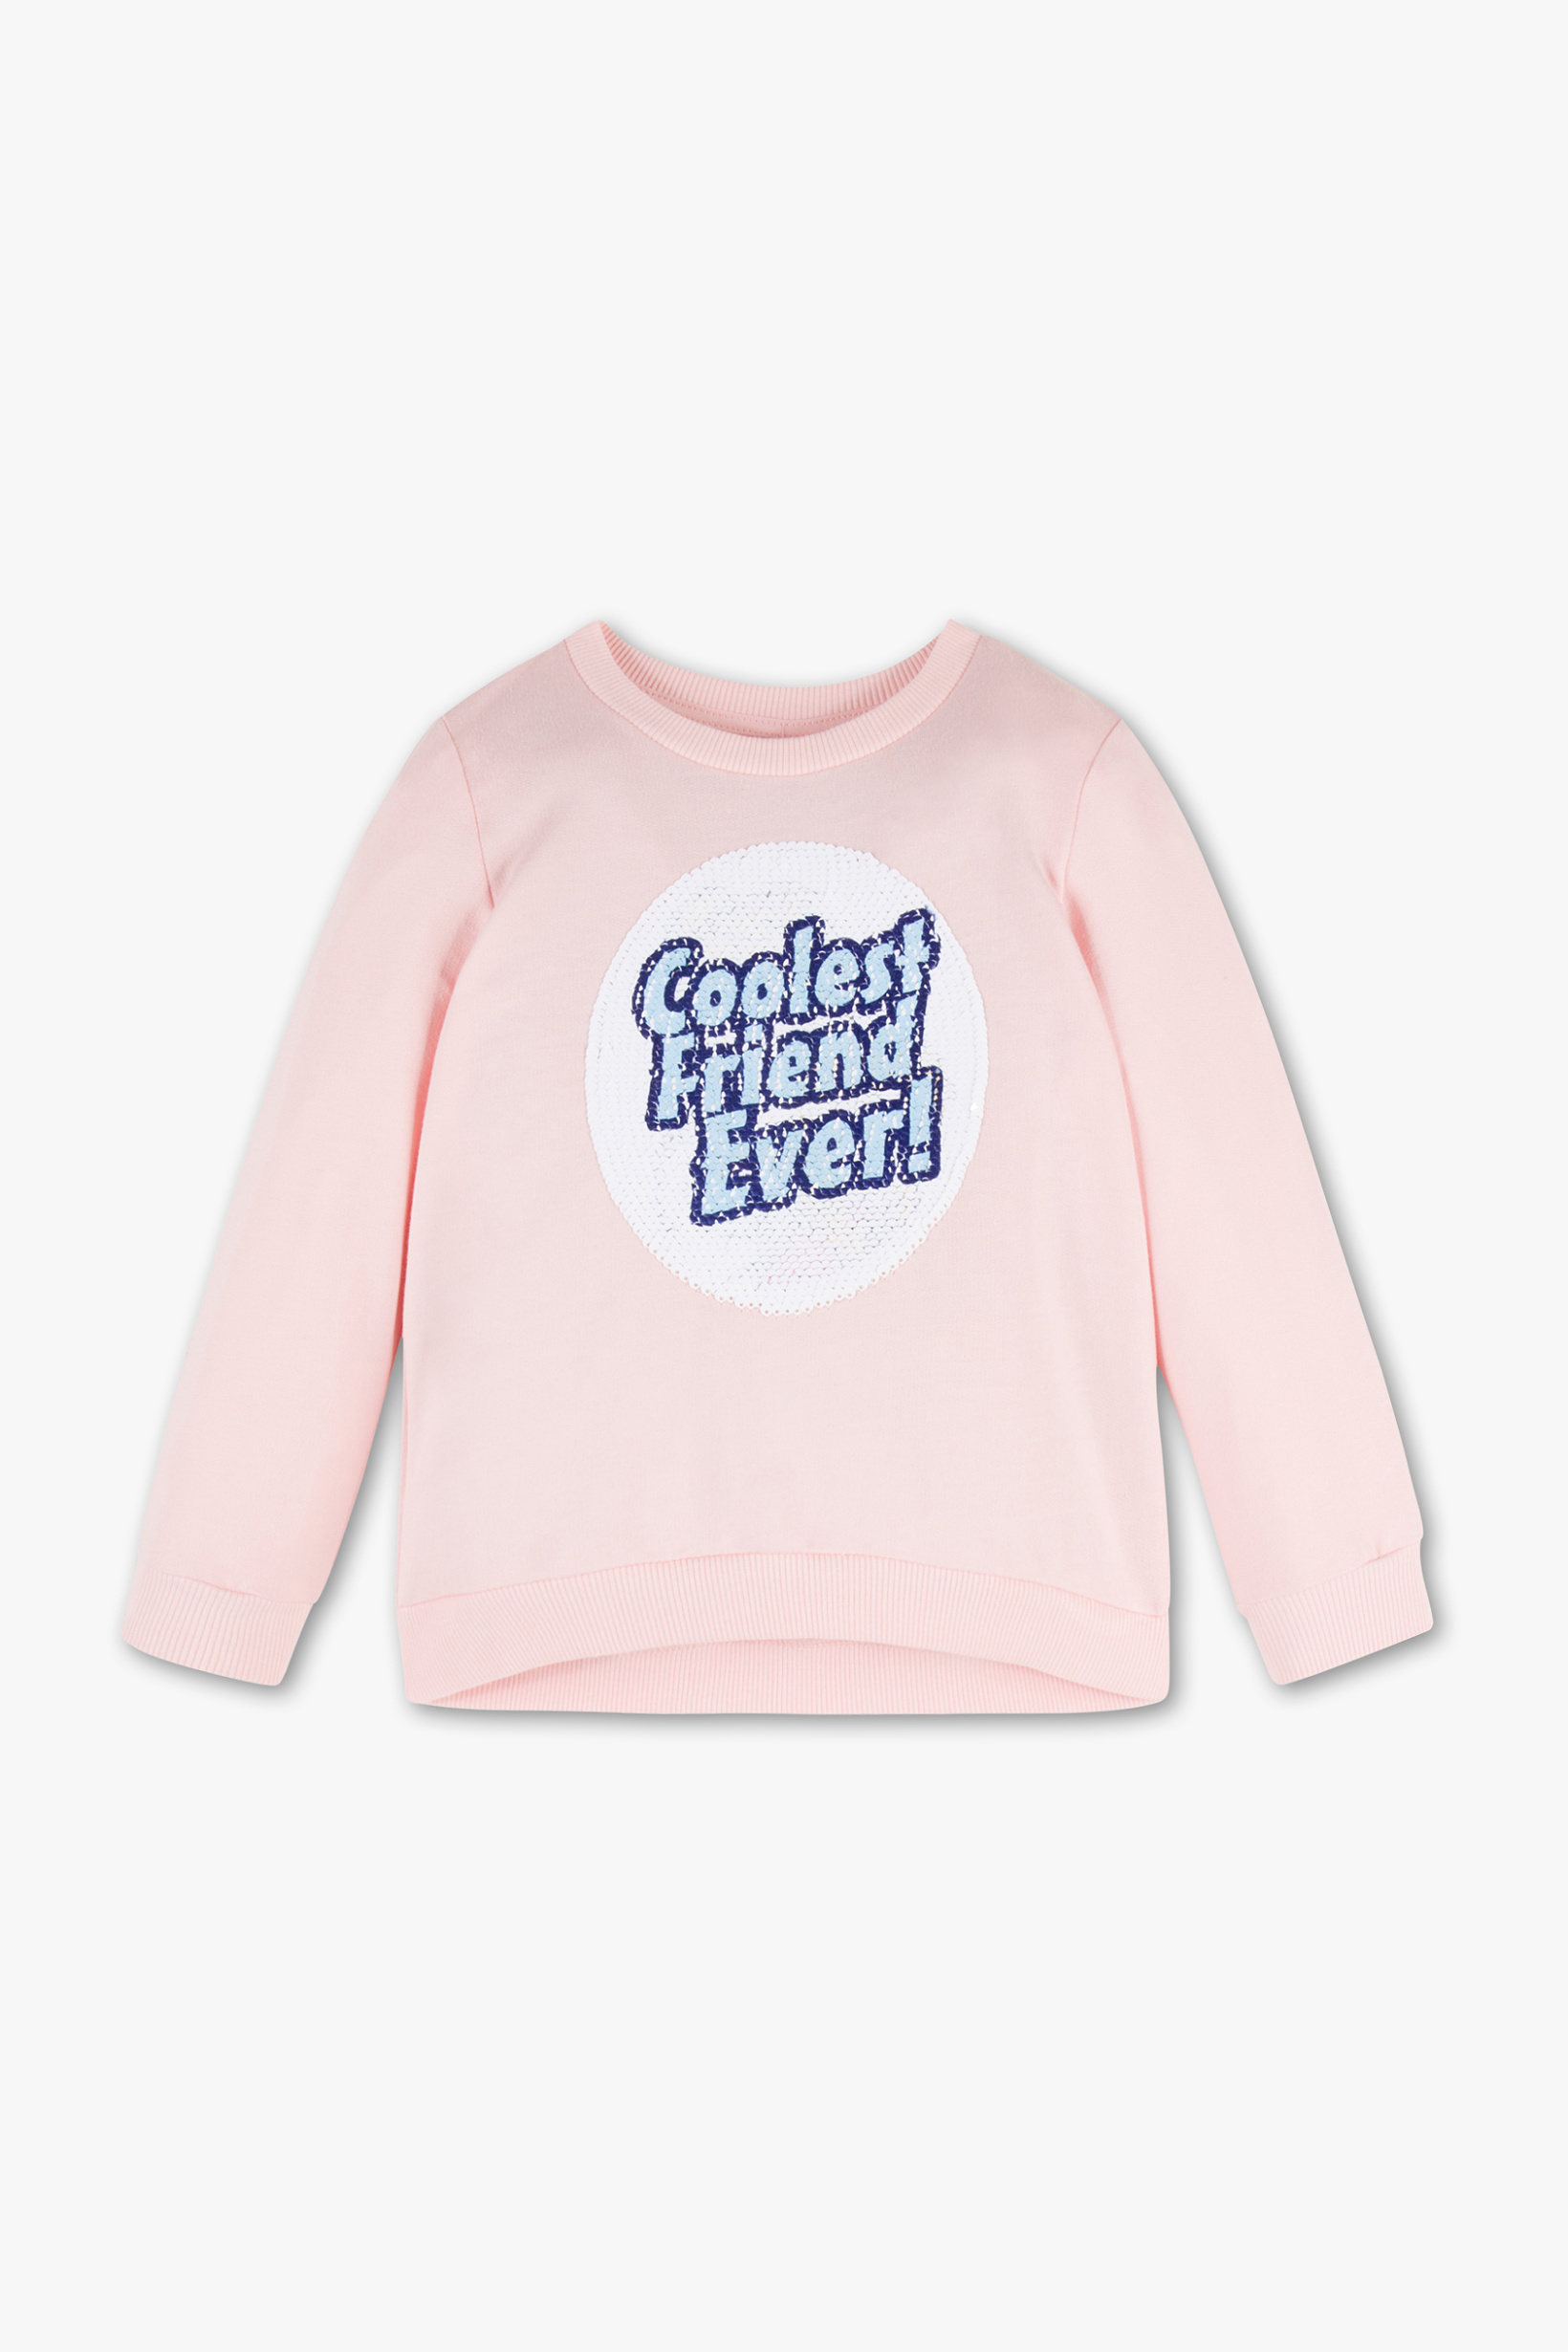 Disney Girls Frozen--sweatshirt